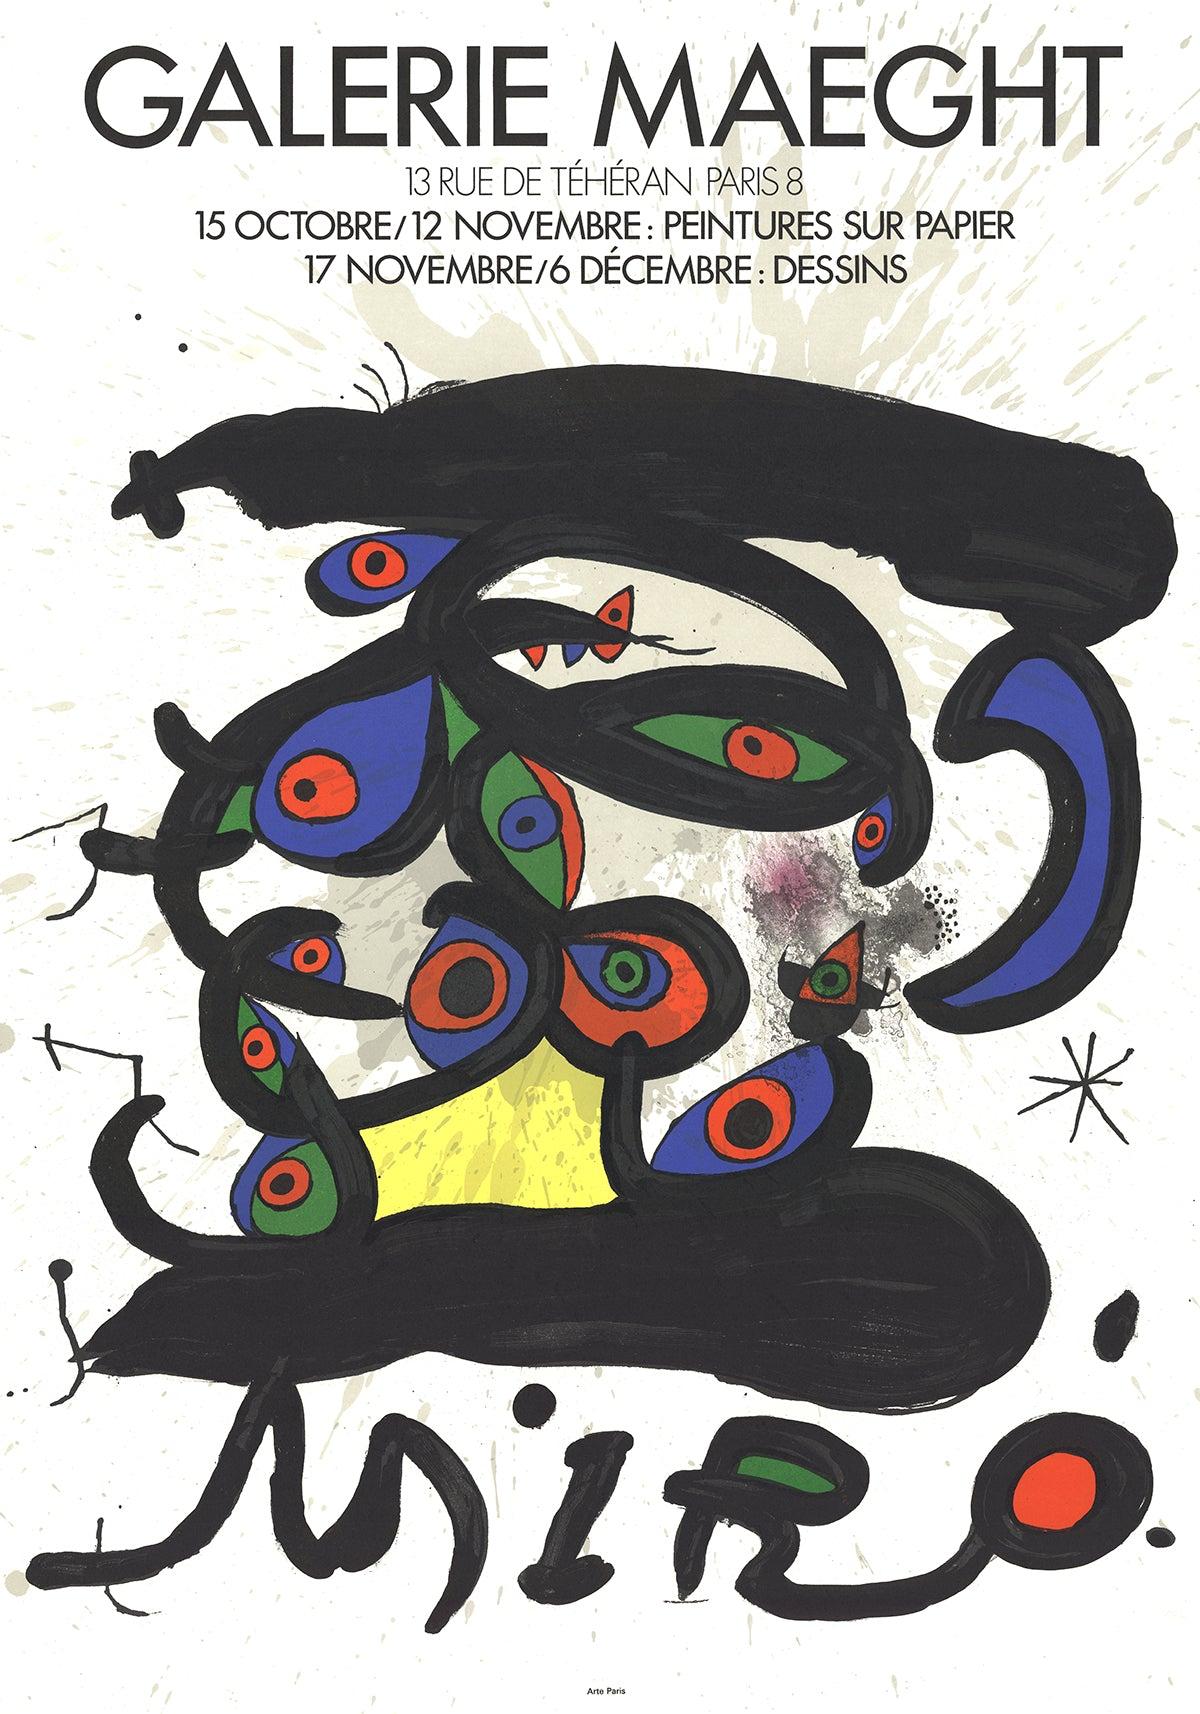 Joan Miro Peintures Sur Papier-Dessins, 1971, Lithographie - Print de Joan Miró